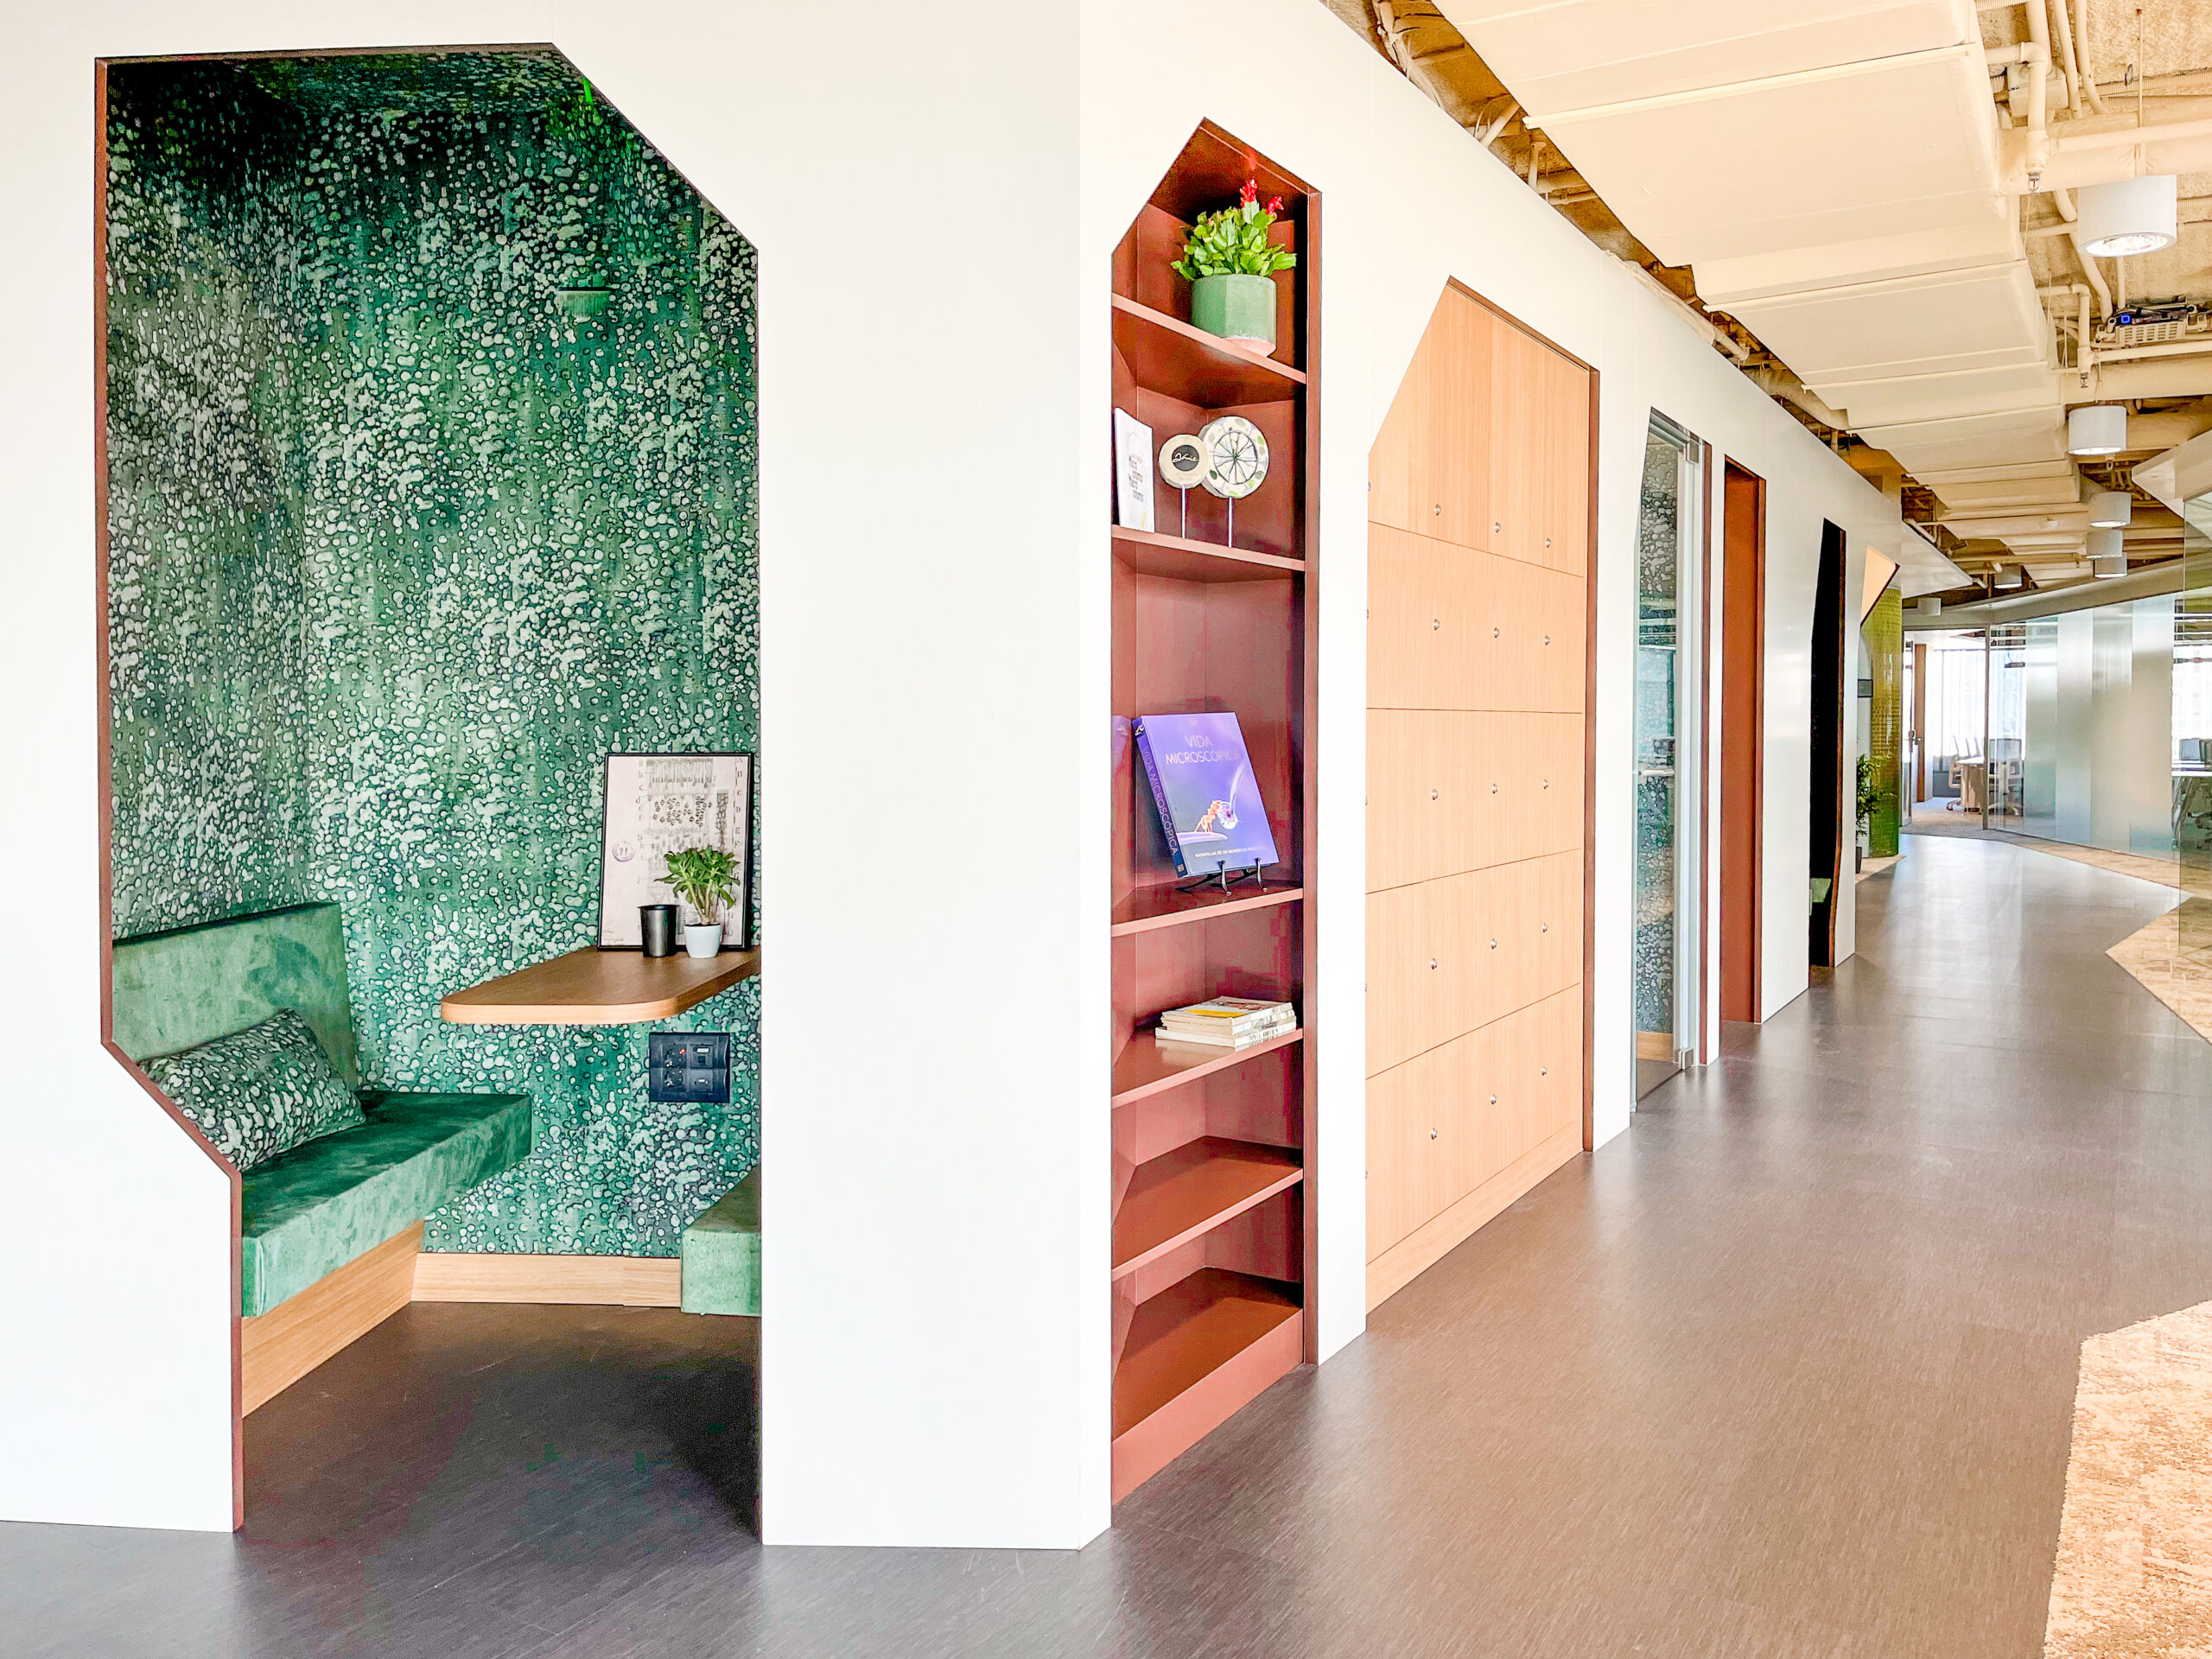 LOOM Castellana 85 es uno de los mejore espacios de alquiler de oficinas en Madrid centro